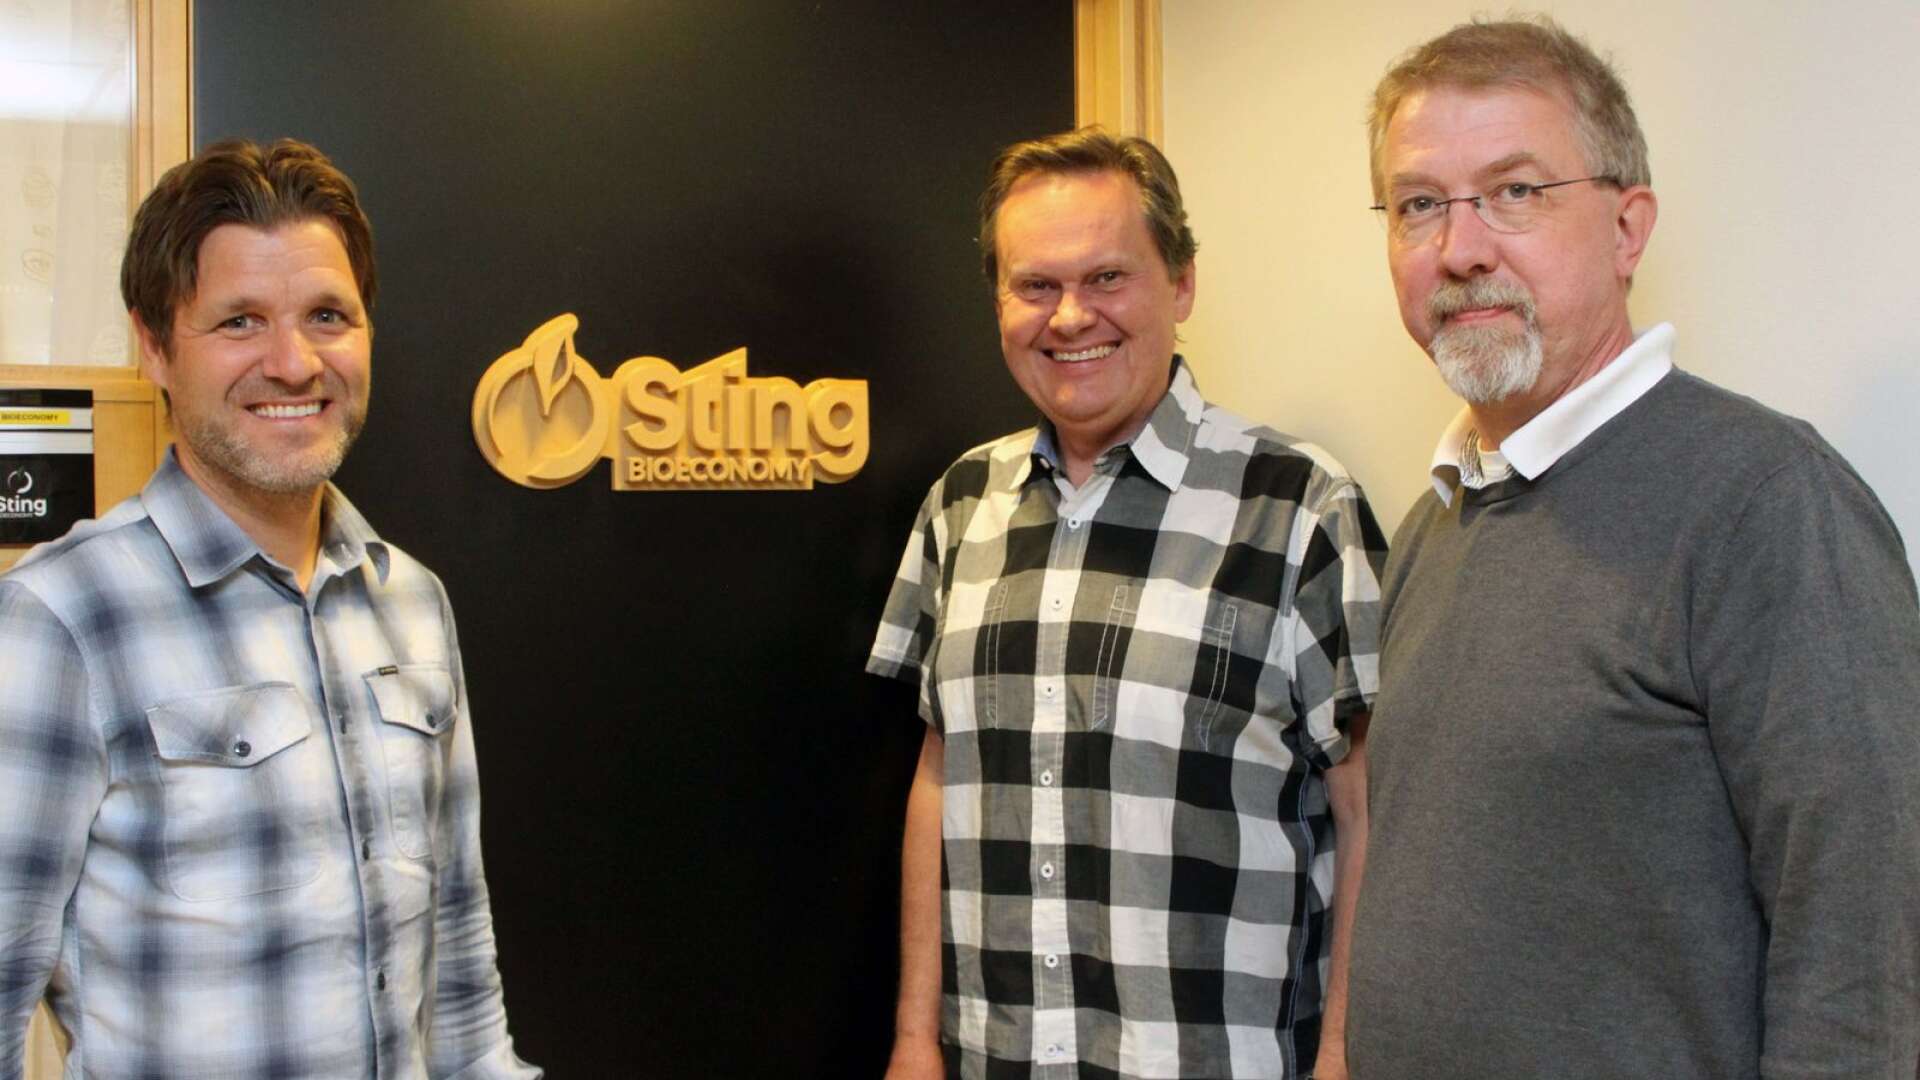 ”Vi hoppas verkligen att de kanadensiska företagen slutligen bestämmer sig för att satsa i Sverige och Värmland”, säger Victor Isaksen, vd Sting Bioeconomy, i mitten, tillsammans med Erik Öhrner och Peter Sassner.